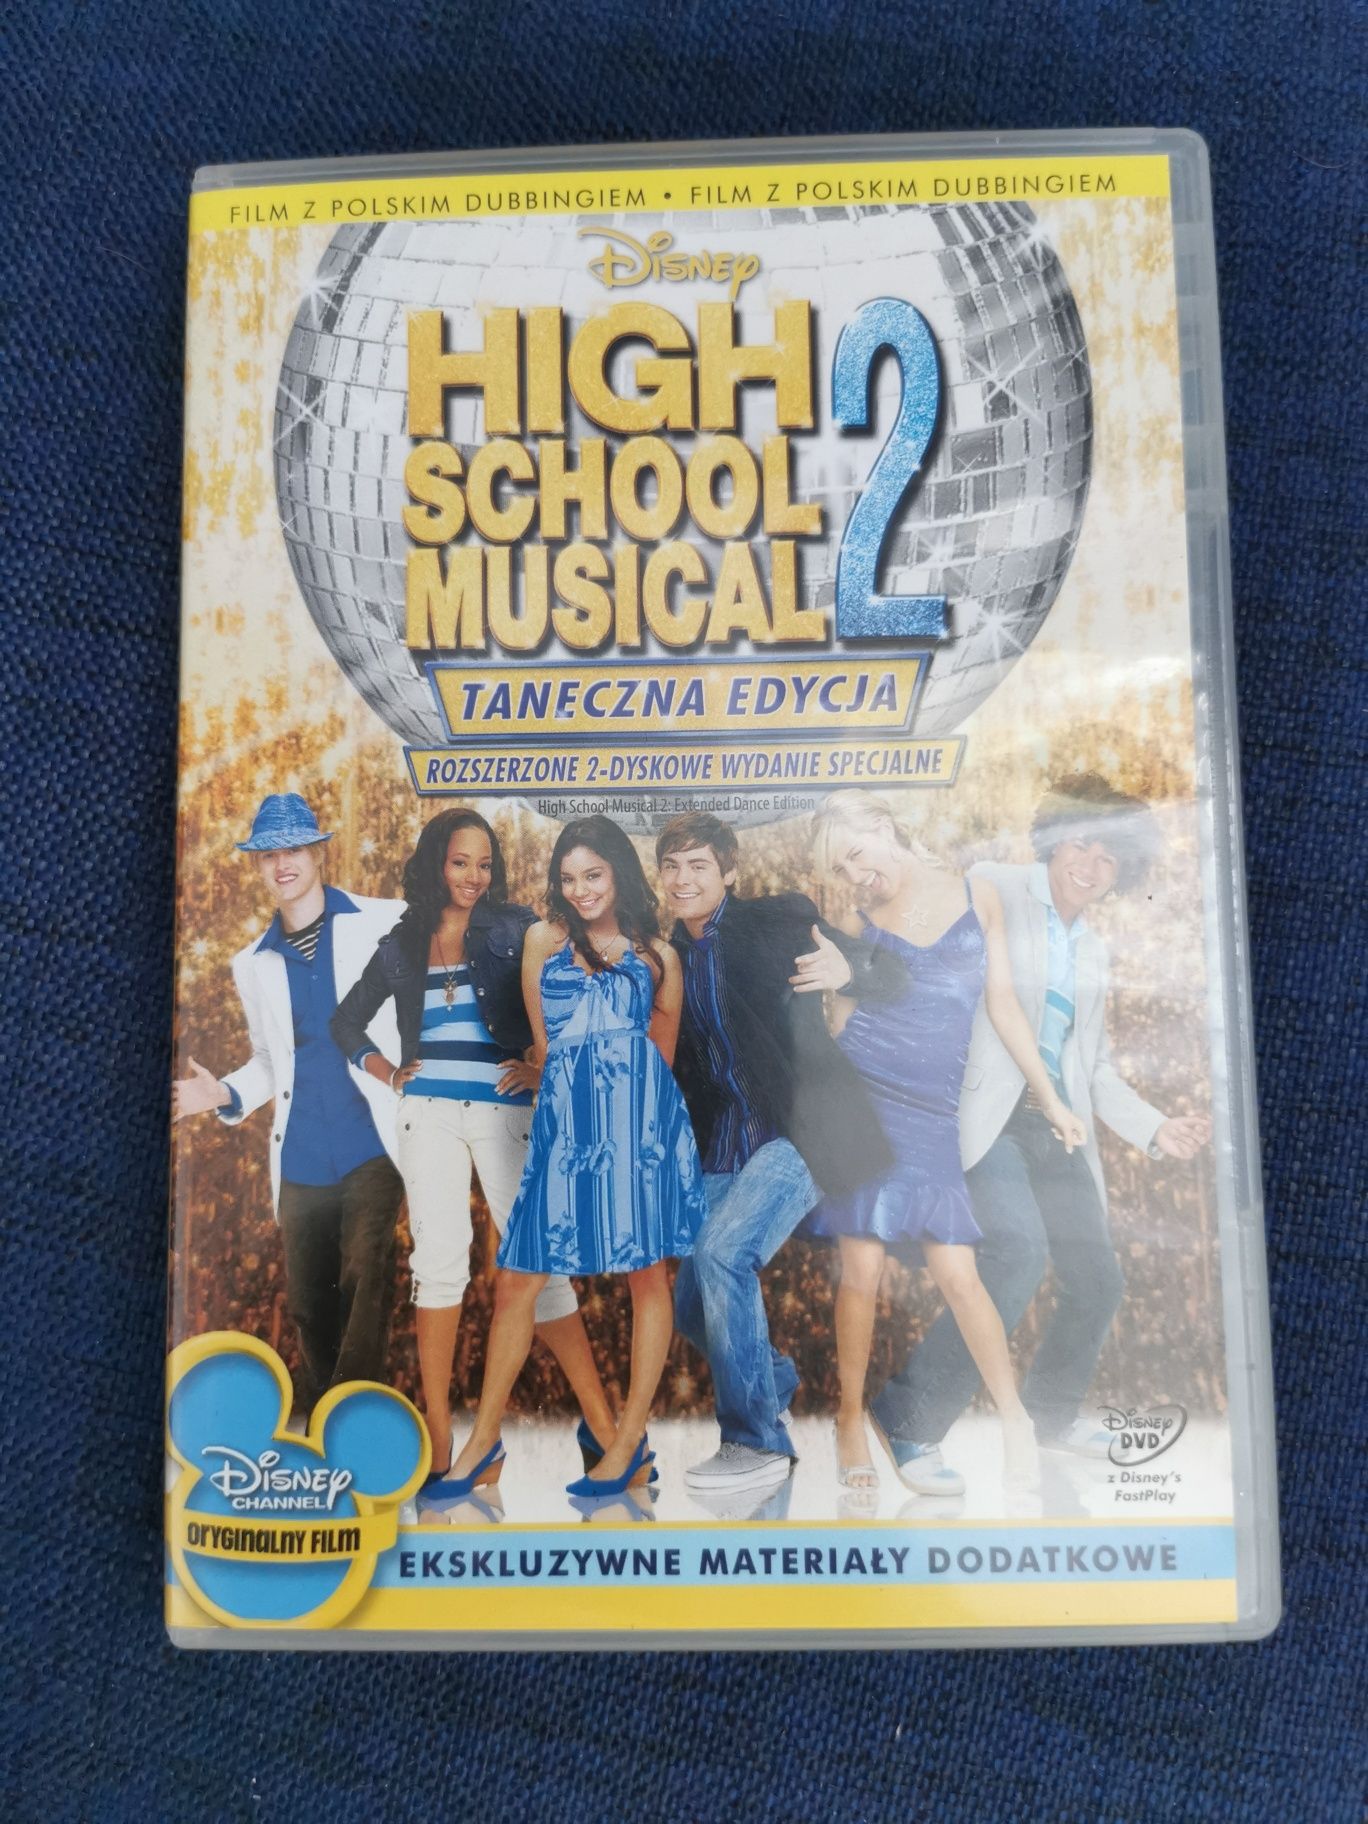 High schooll musical 2 edycja taneczna wydanie specjalne